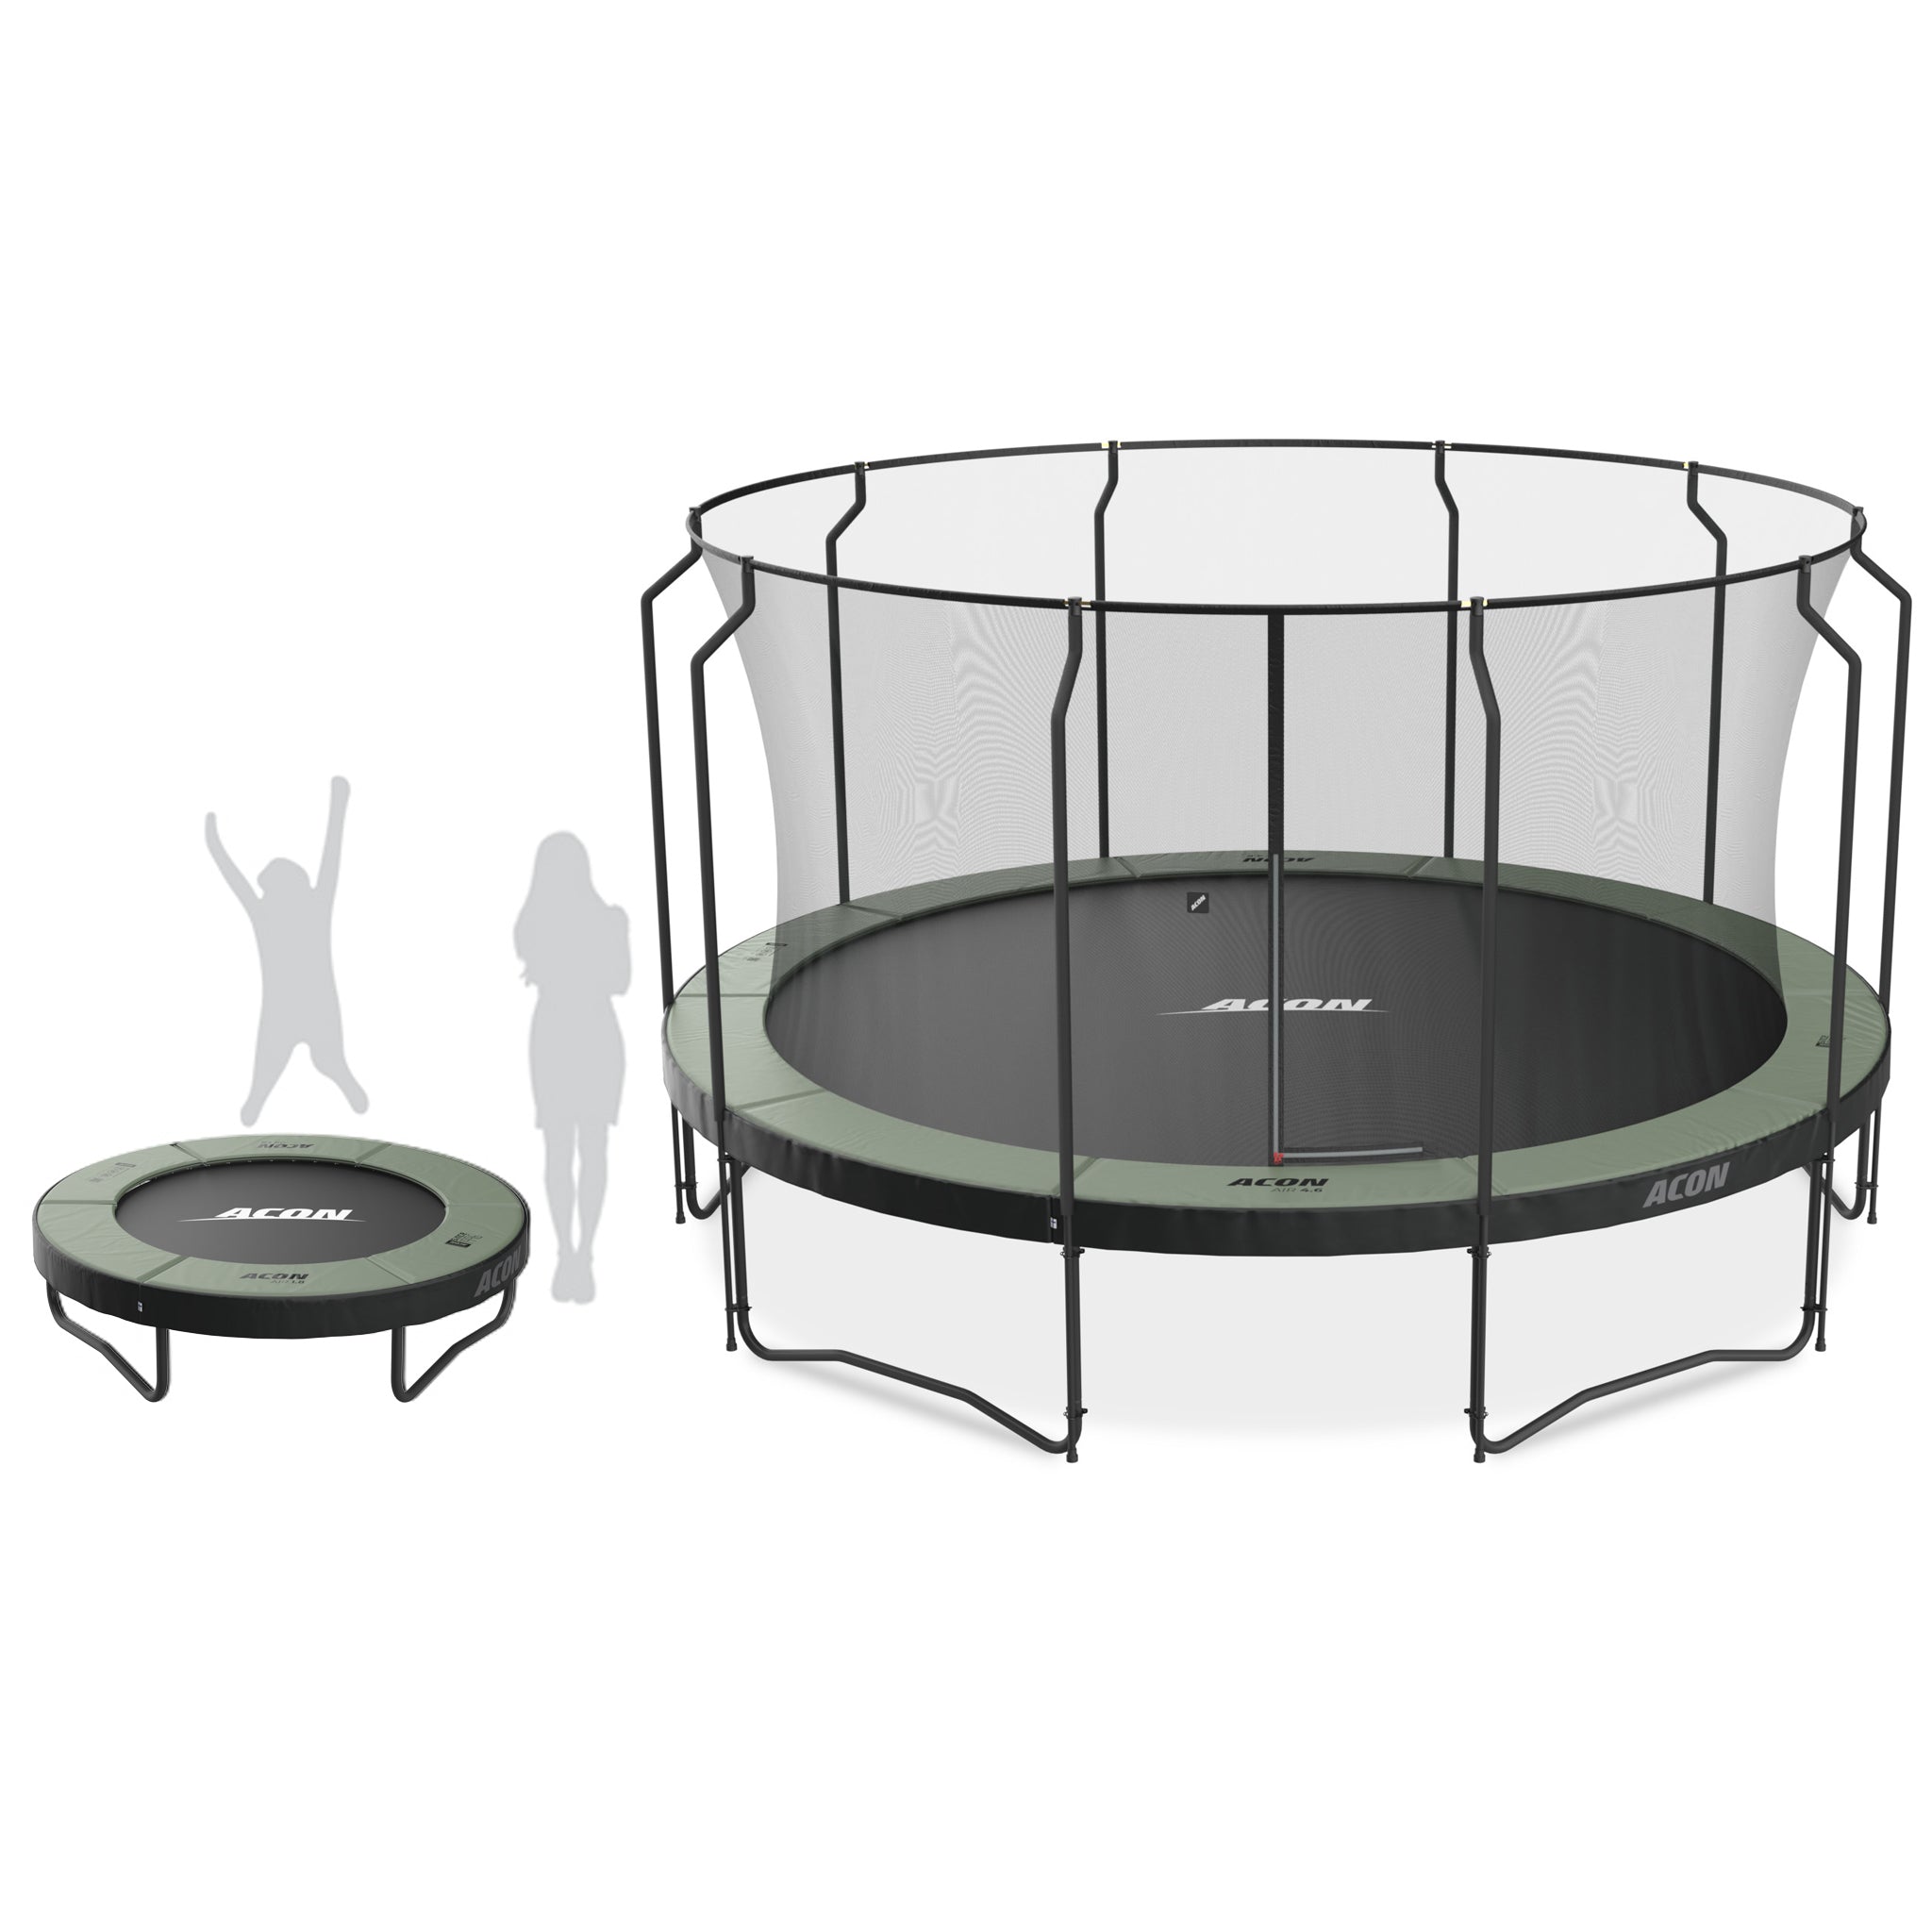 Trampoliini koko havainnollistaja. Kuvassa kaksi Acon trampoliinimallia.